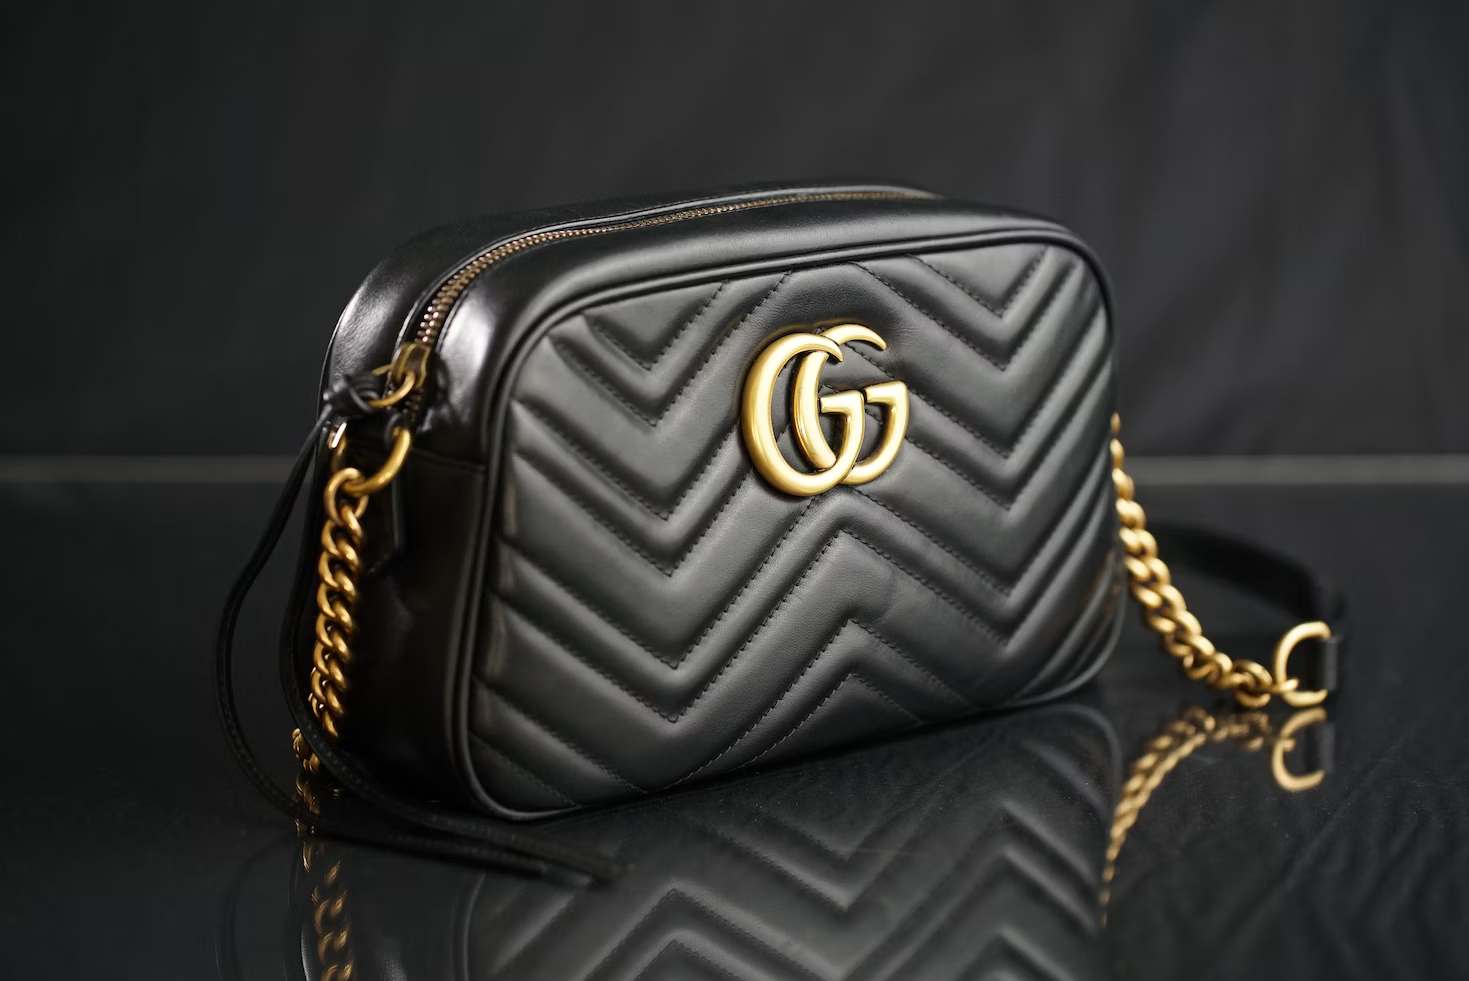 Black classic Gucci bag